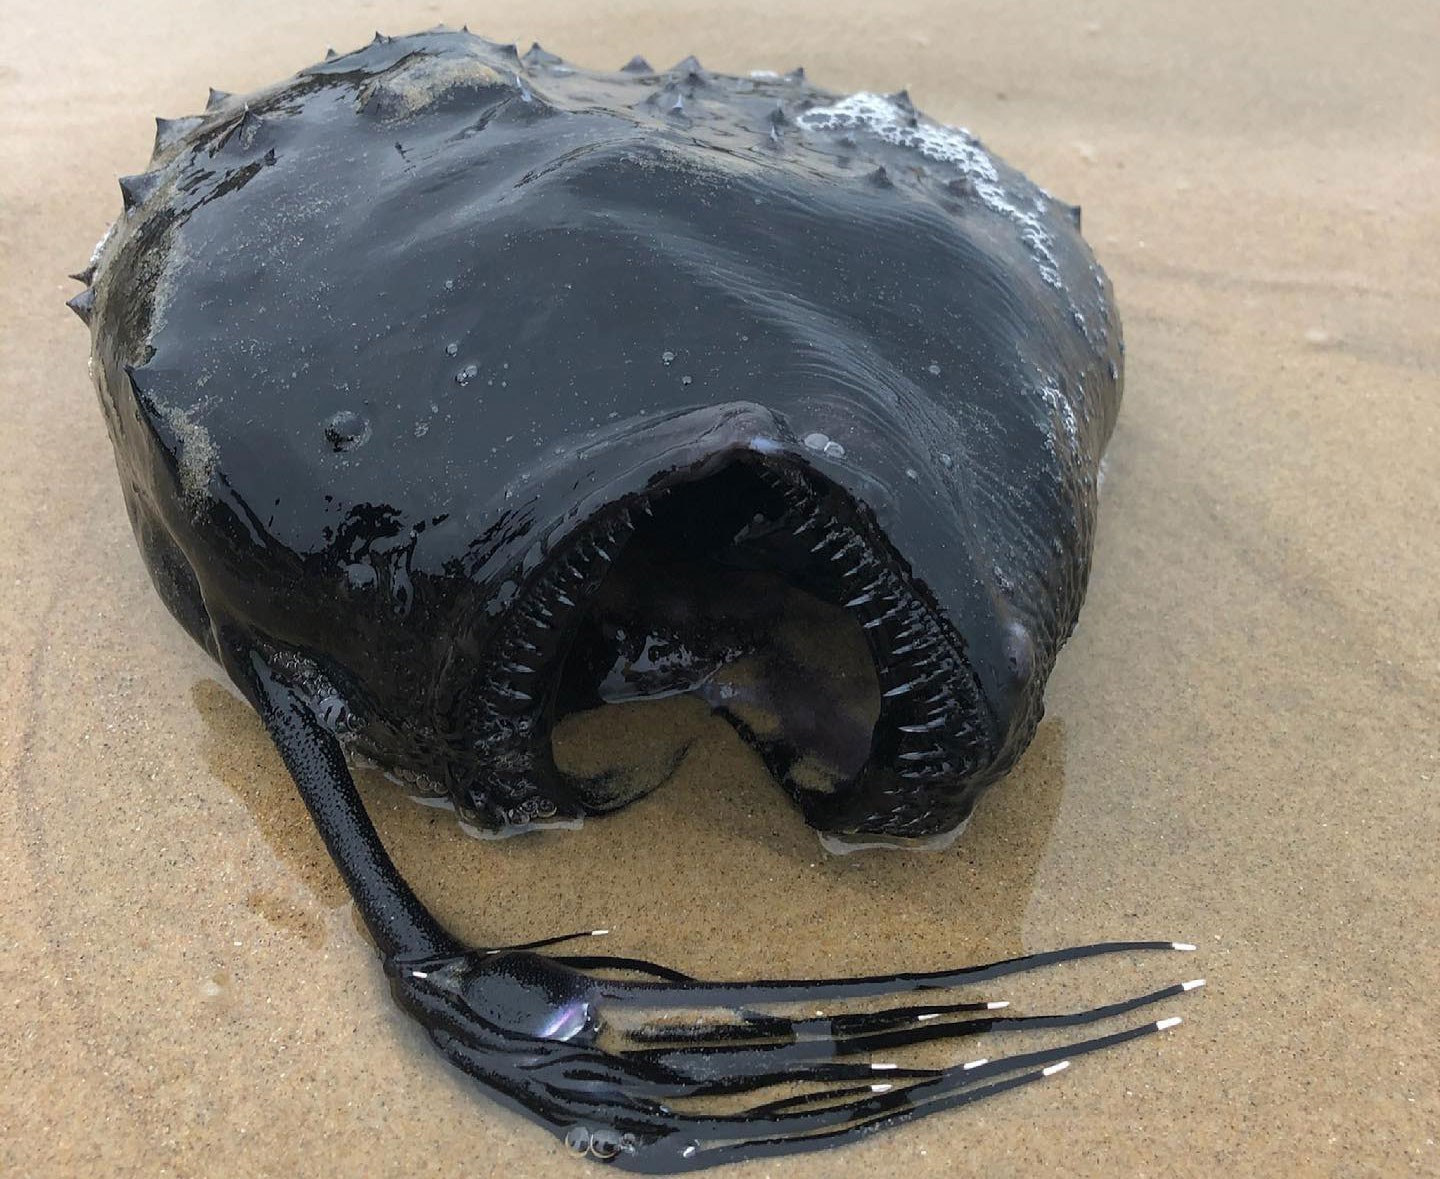 Peixe gigante das profundezas do oceano é encontrado em praia na Califórnia thumbnail